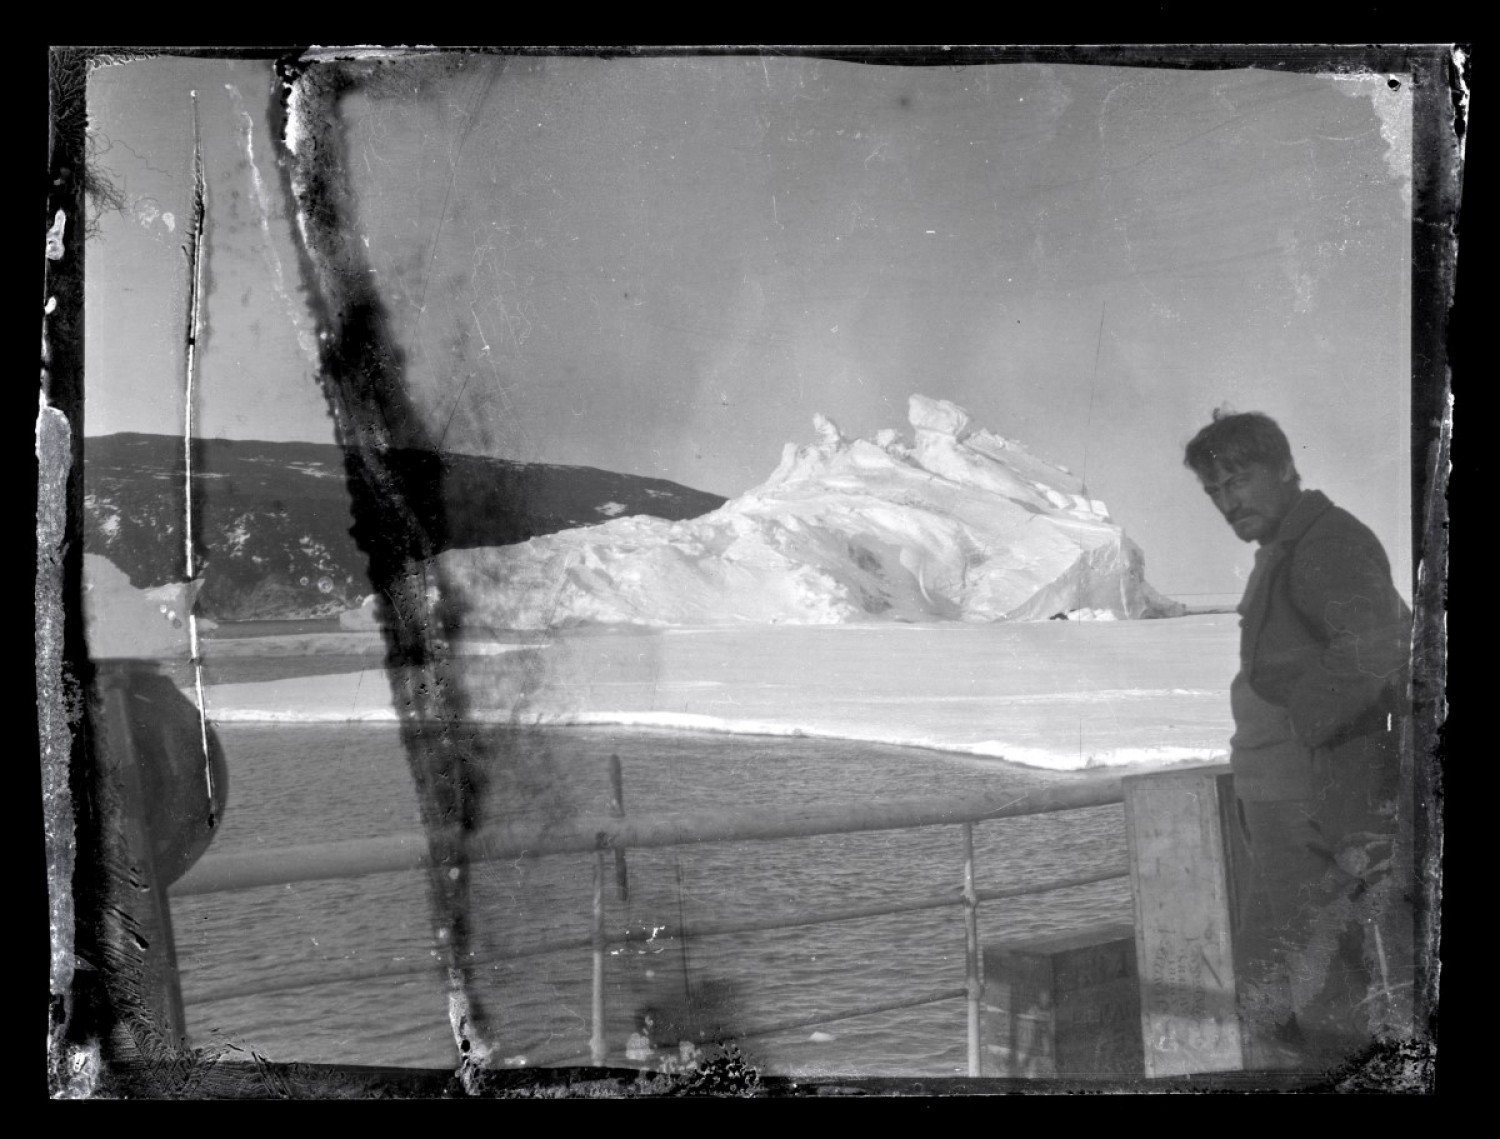 عکس هایی 100 ساله که از دل یخ های قطب جنوب زنده شد / اسناد یخ زده یک تراژدی بزرگ تاریخی